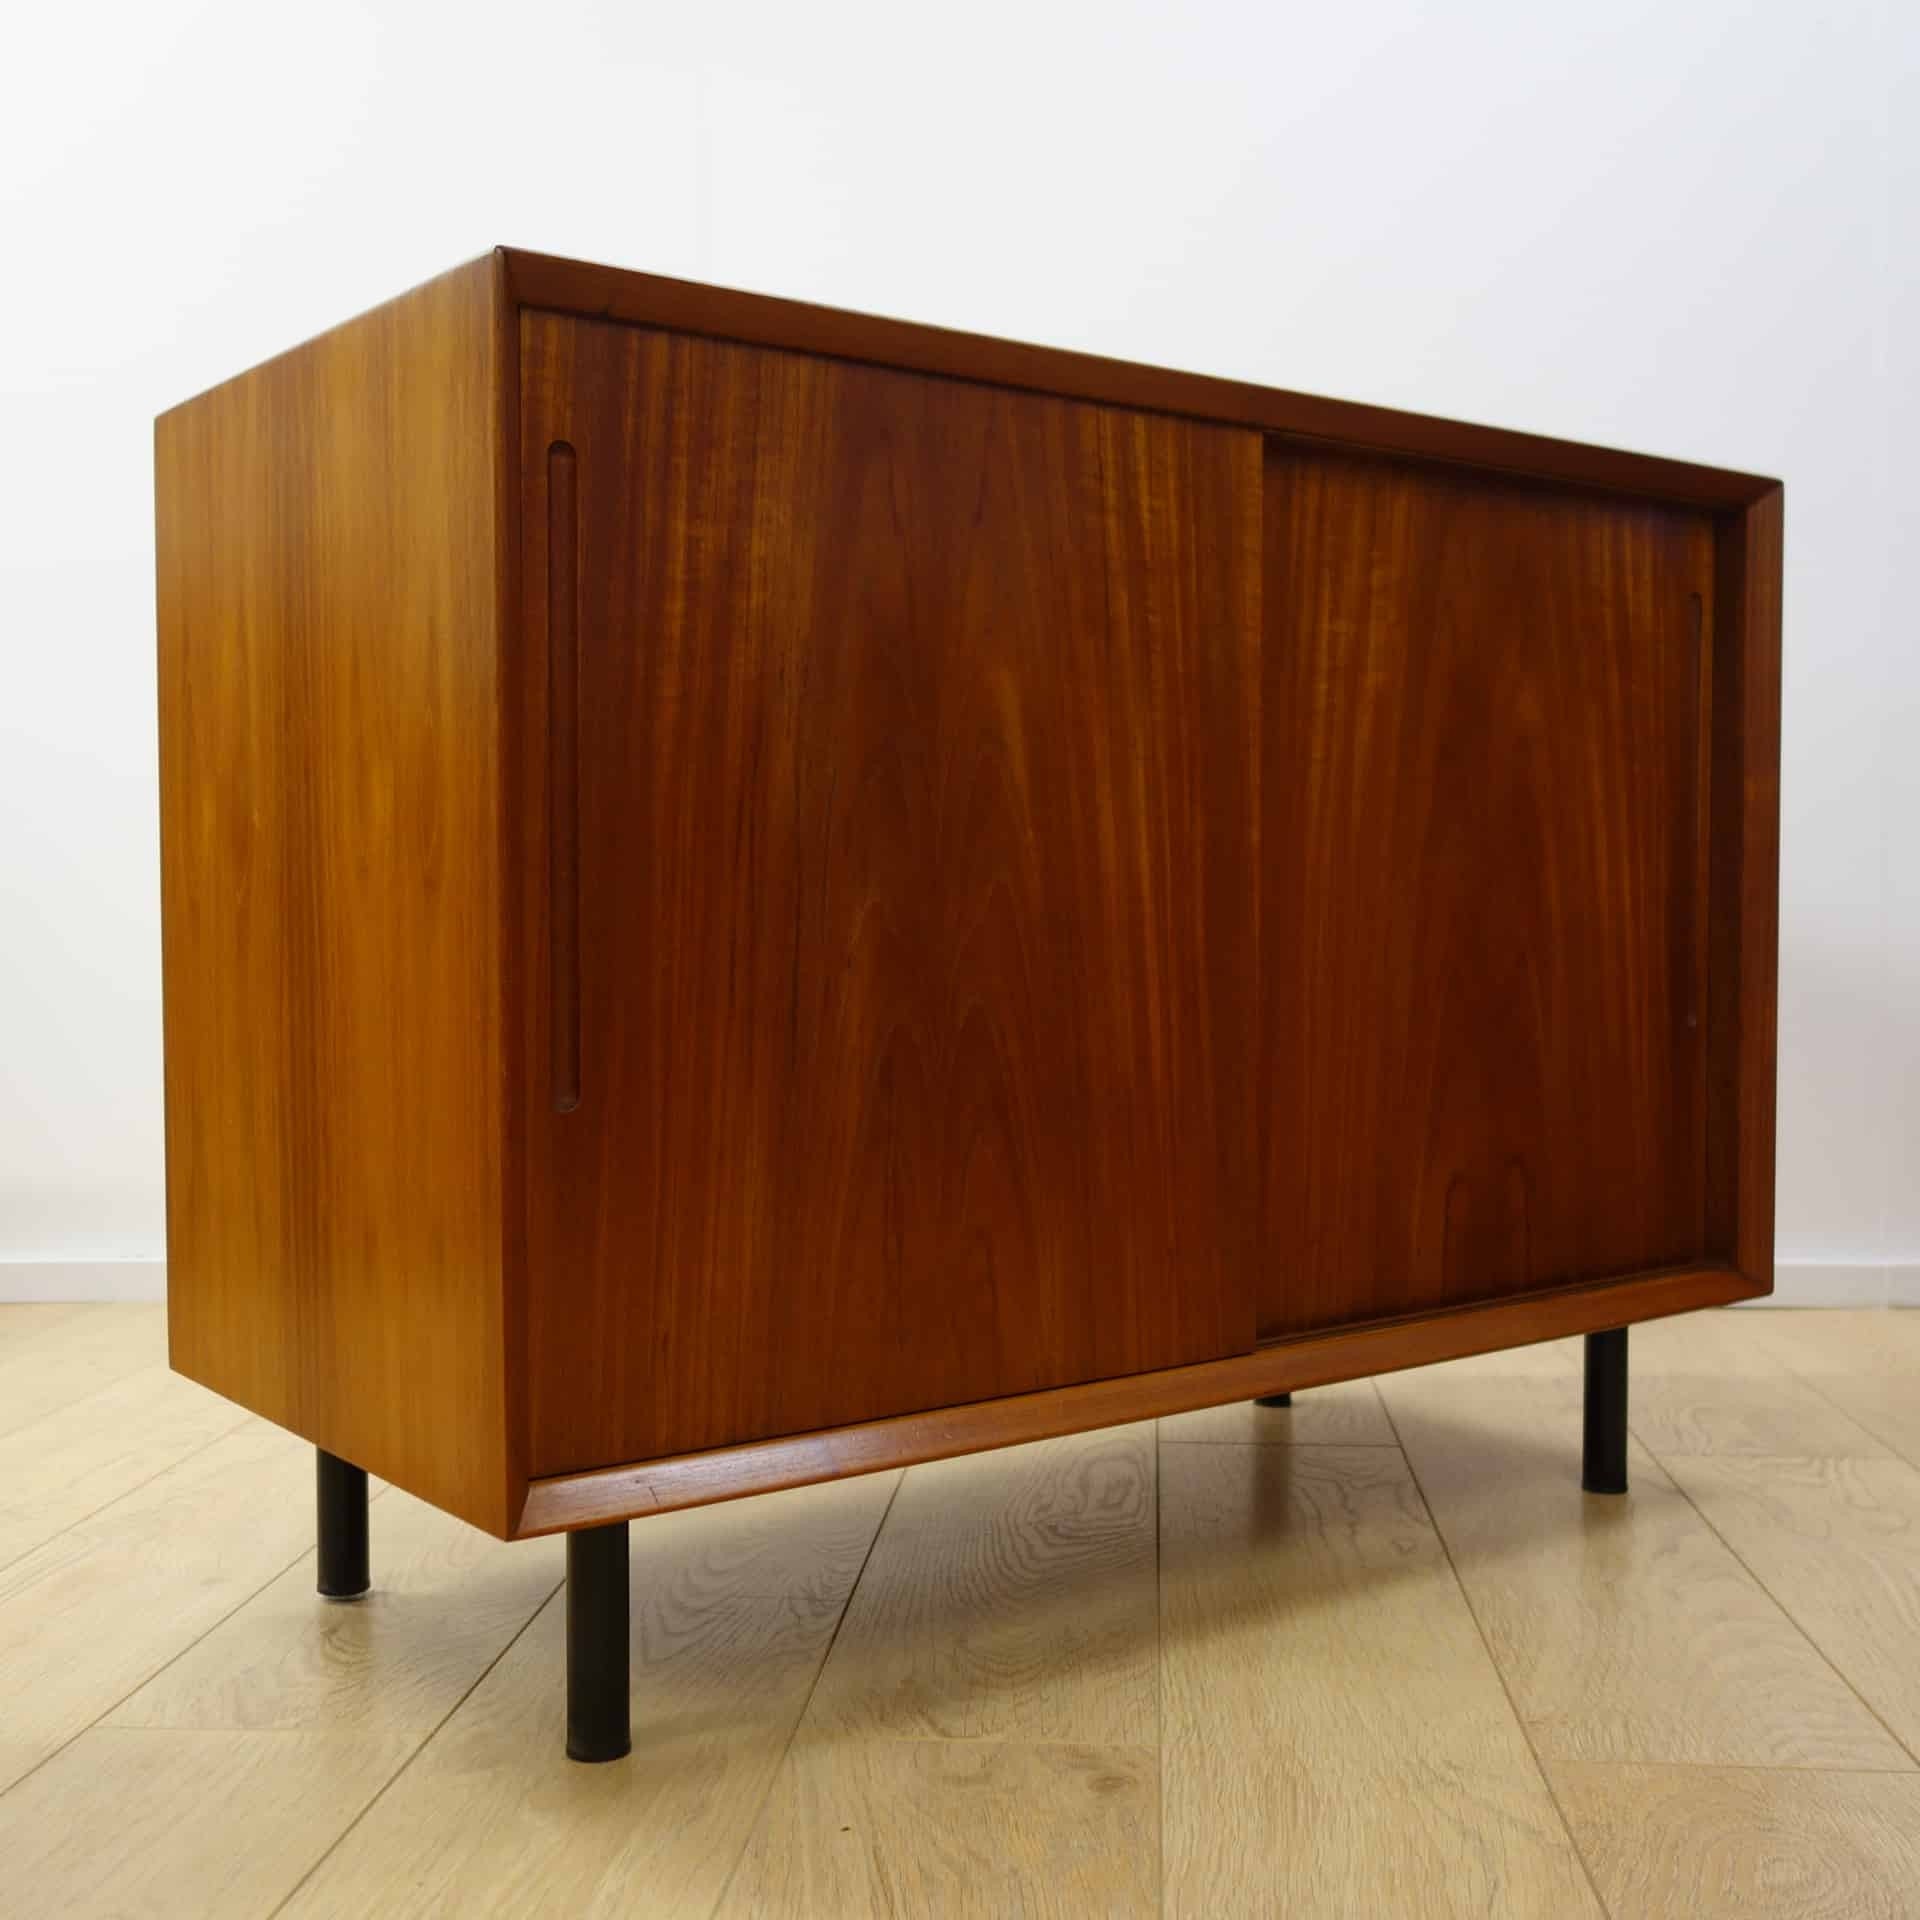 Pair of 1960s danish teak cabinets mark parrish mid